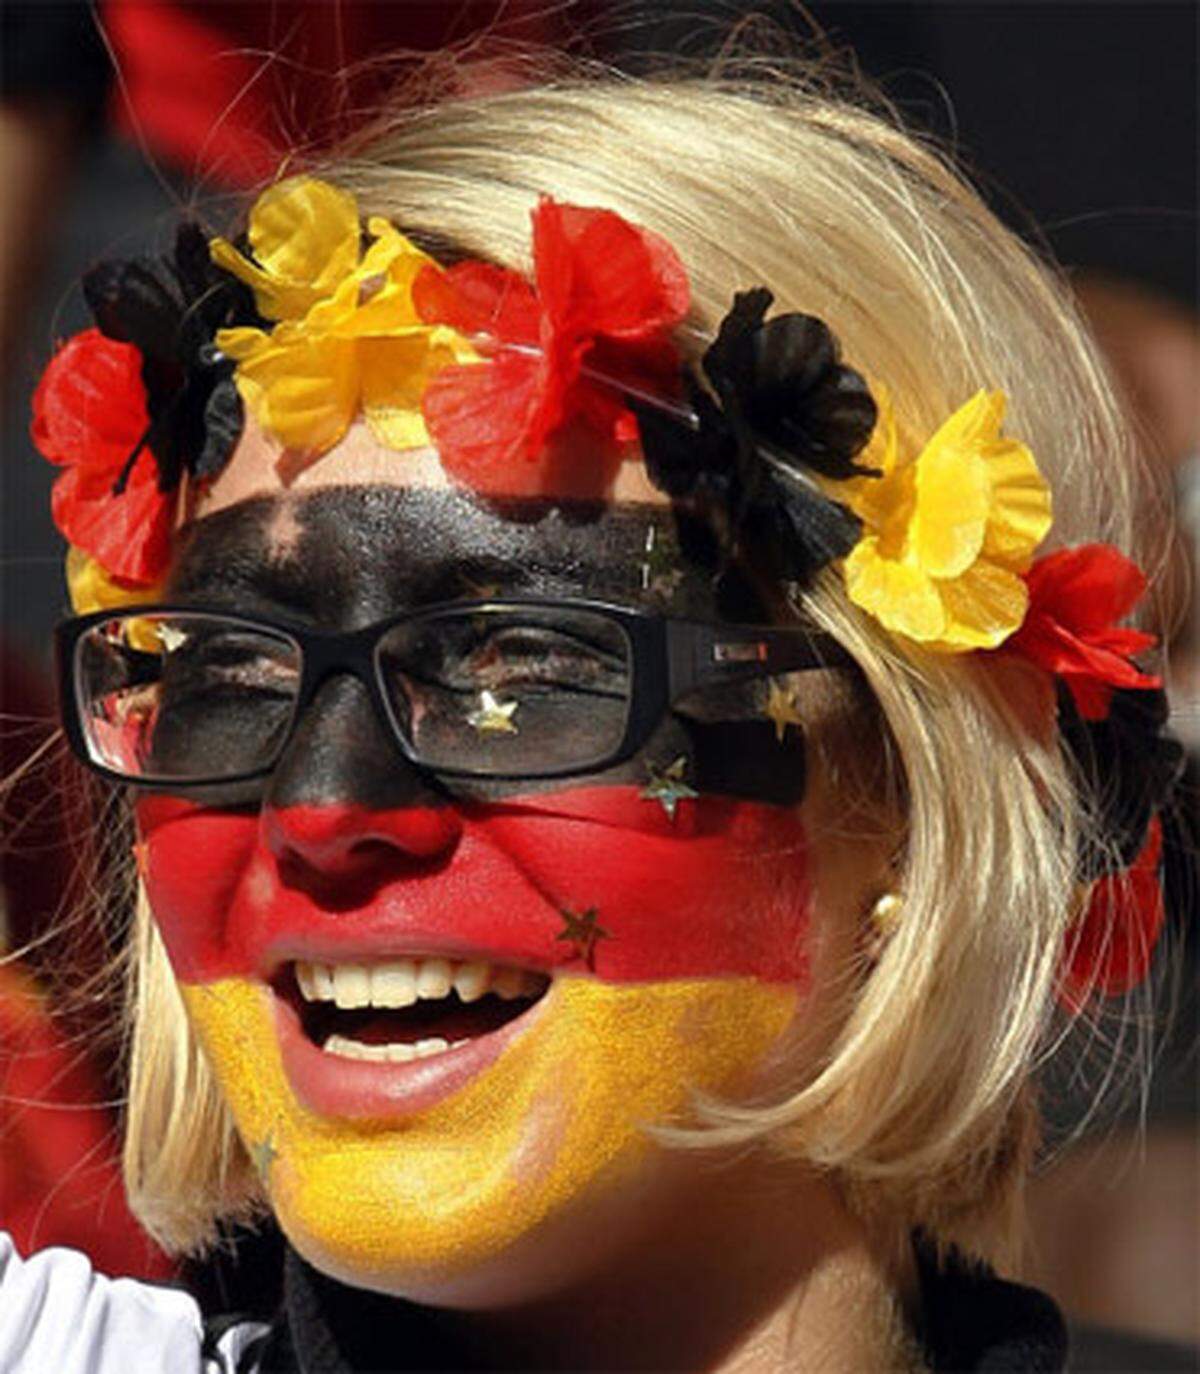 Mit viel Optimismus starteten die deutschen Fans ins Match gegen Serbien - doch die ganze deutsche Gründlichkeit beim Schminken half nicht viel.